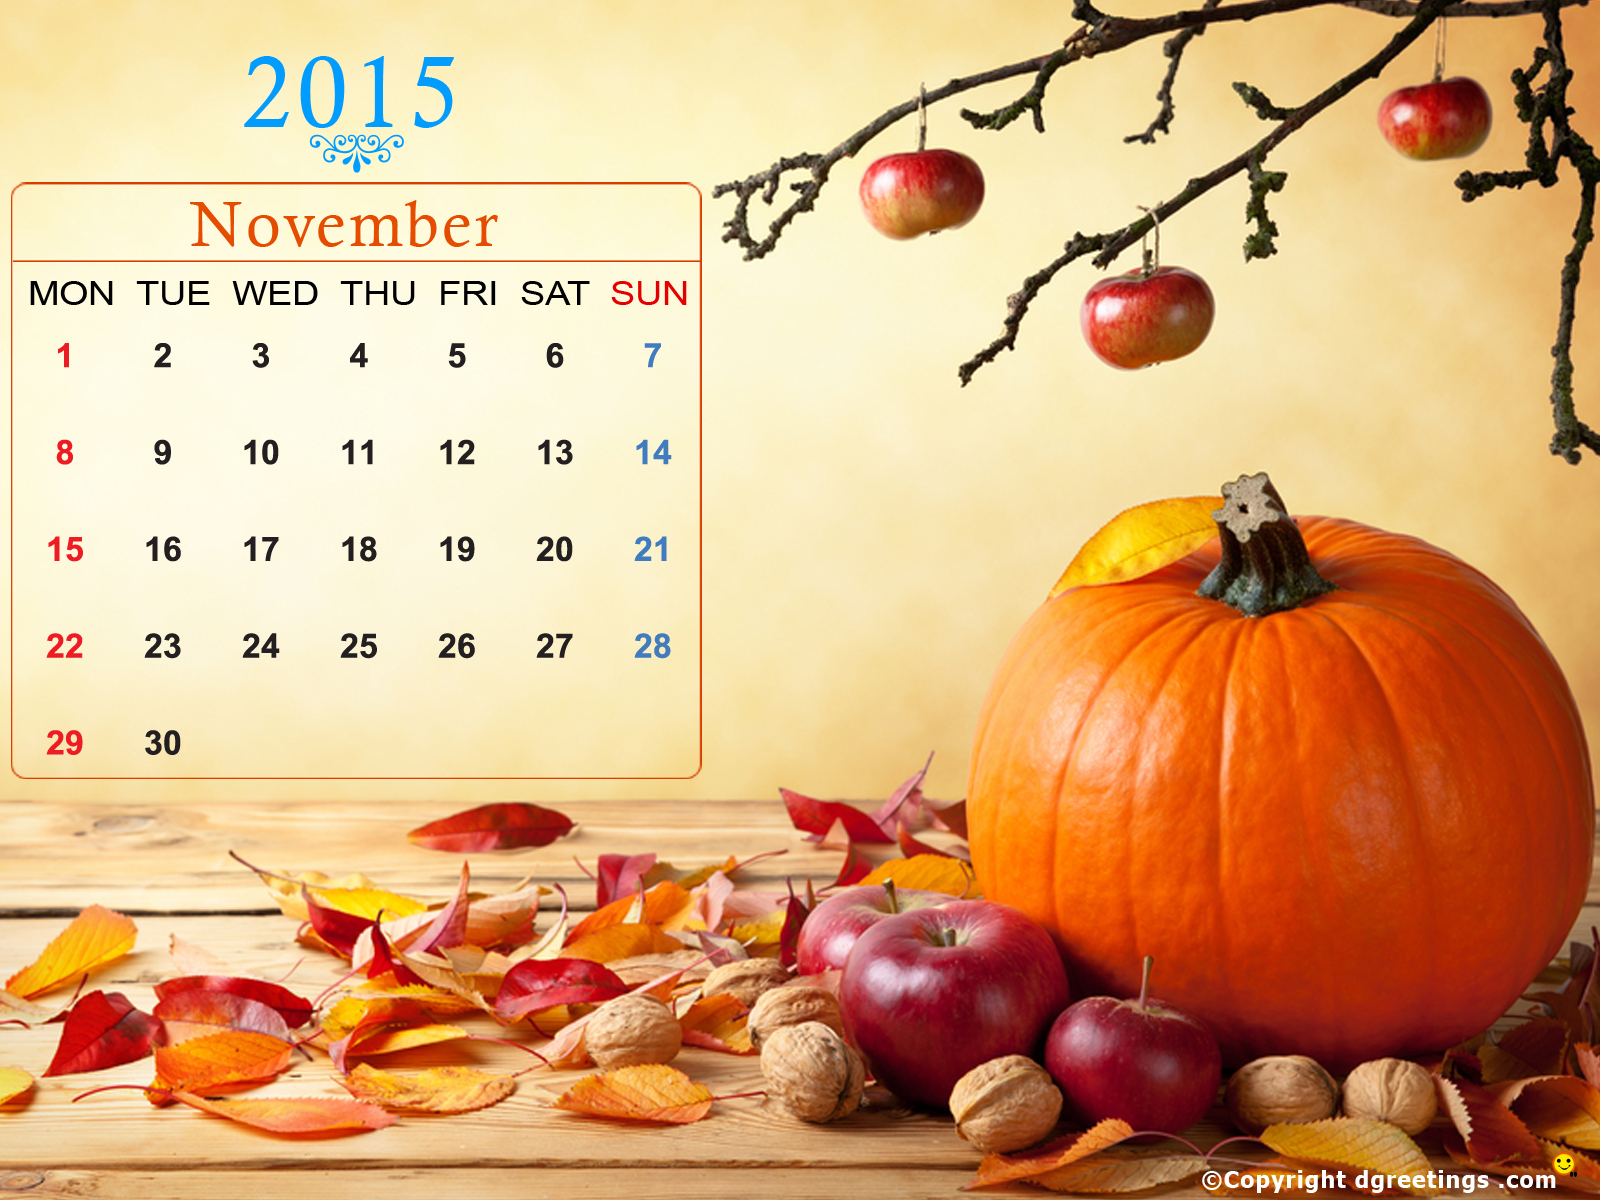 November Calendar Wallpaper Dgreetings